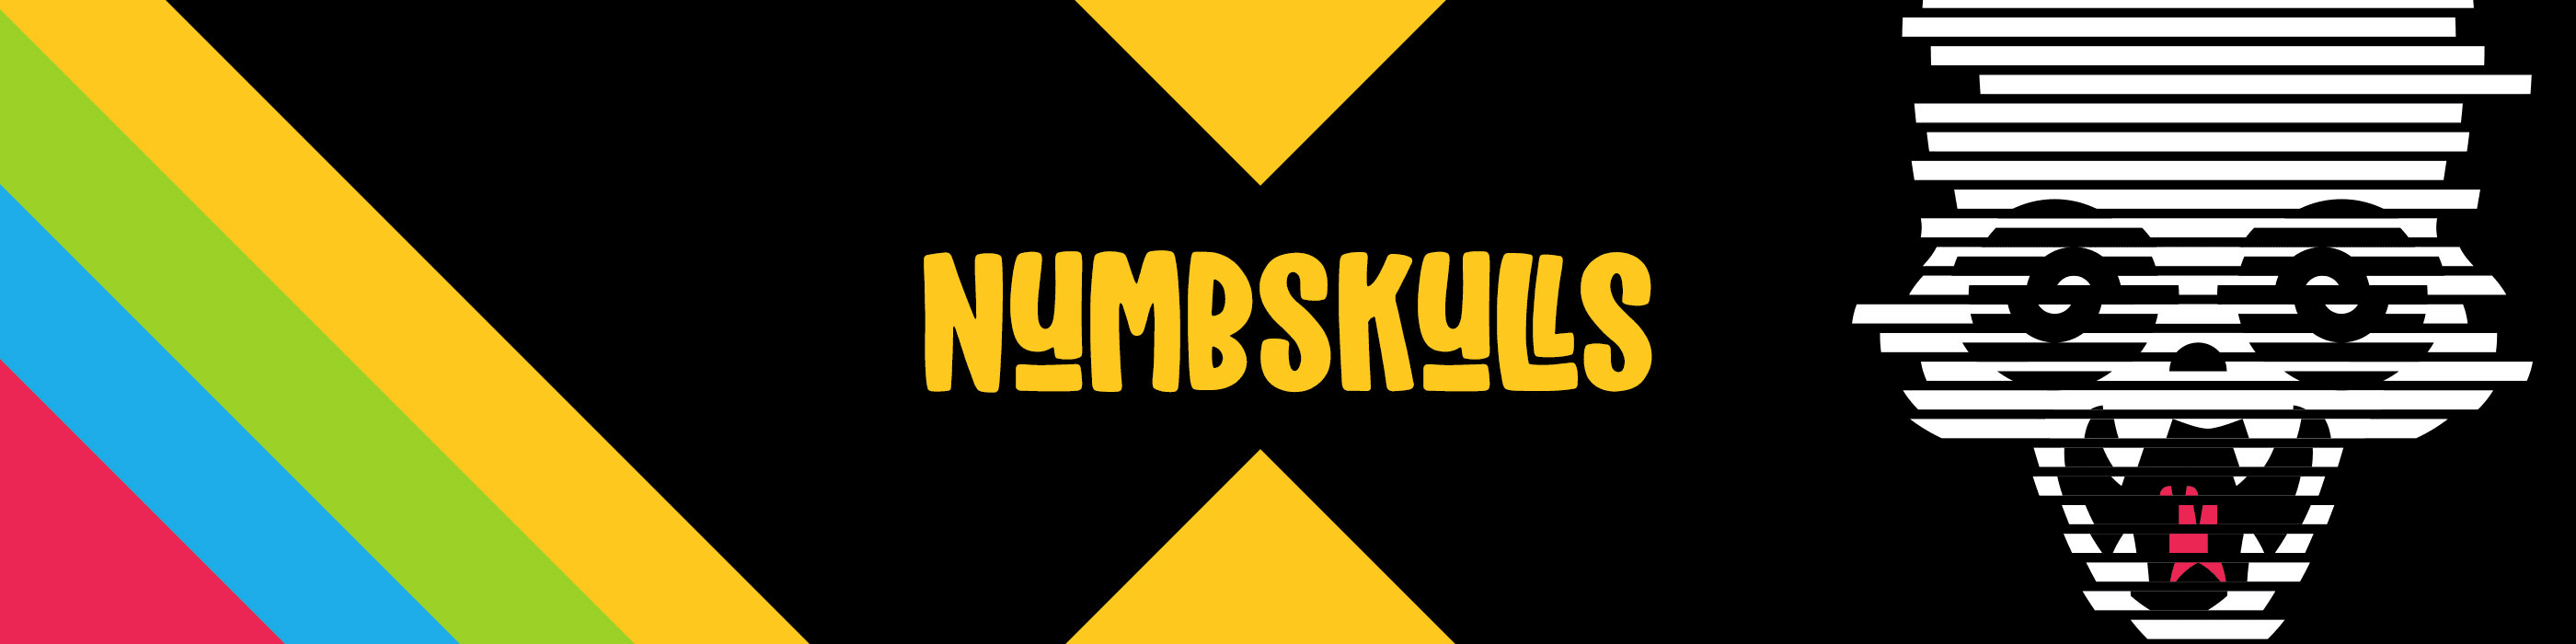 NumbSkulls Official